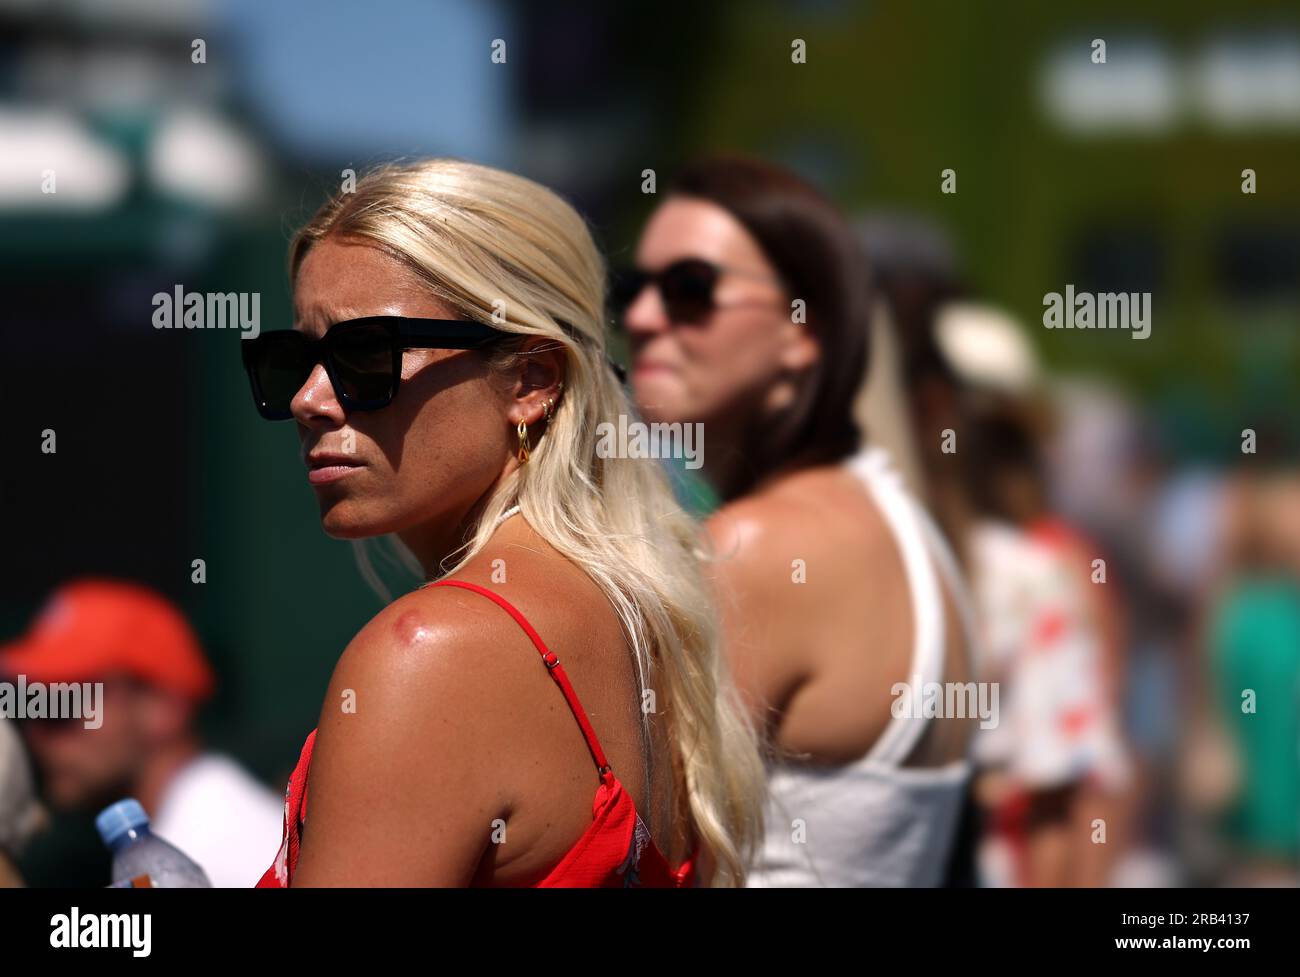 Spettatori al quinto giorno dei campionati di Wimbledon 2023 all'All England Lawn Tennis and Croquet Club di Wimbledon. Data immagine: Venerdì 7 luglio 2023. Foto Stock